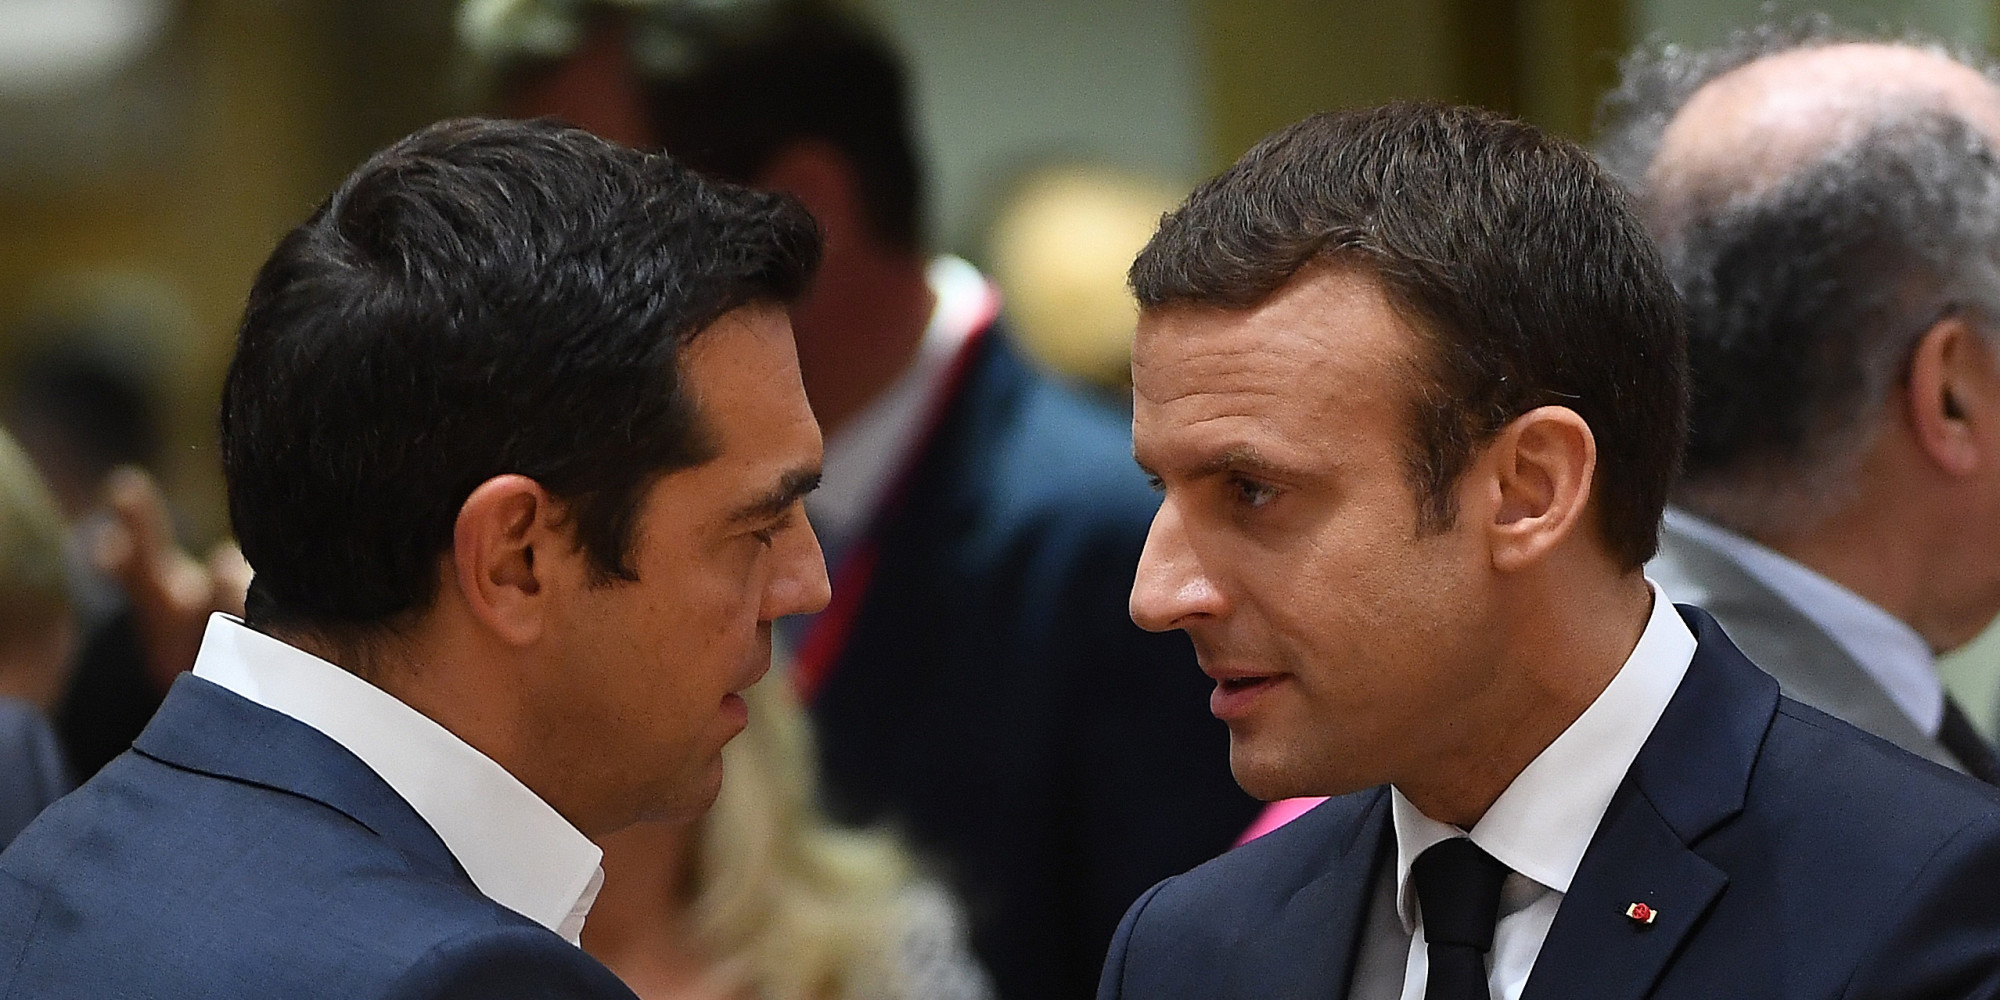 Ε.Μακρόν: «Η Γαλλία θα συμπαραταχθεί με την Ελλάδα αν αυτή συγκρουστεί με τη Τουρκία»